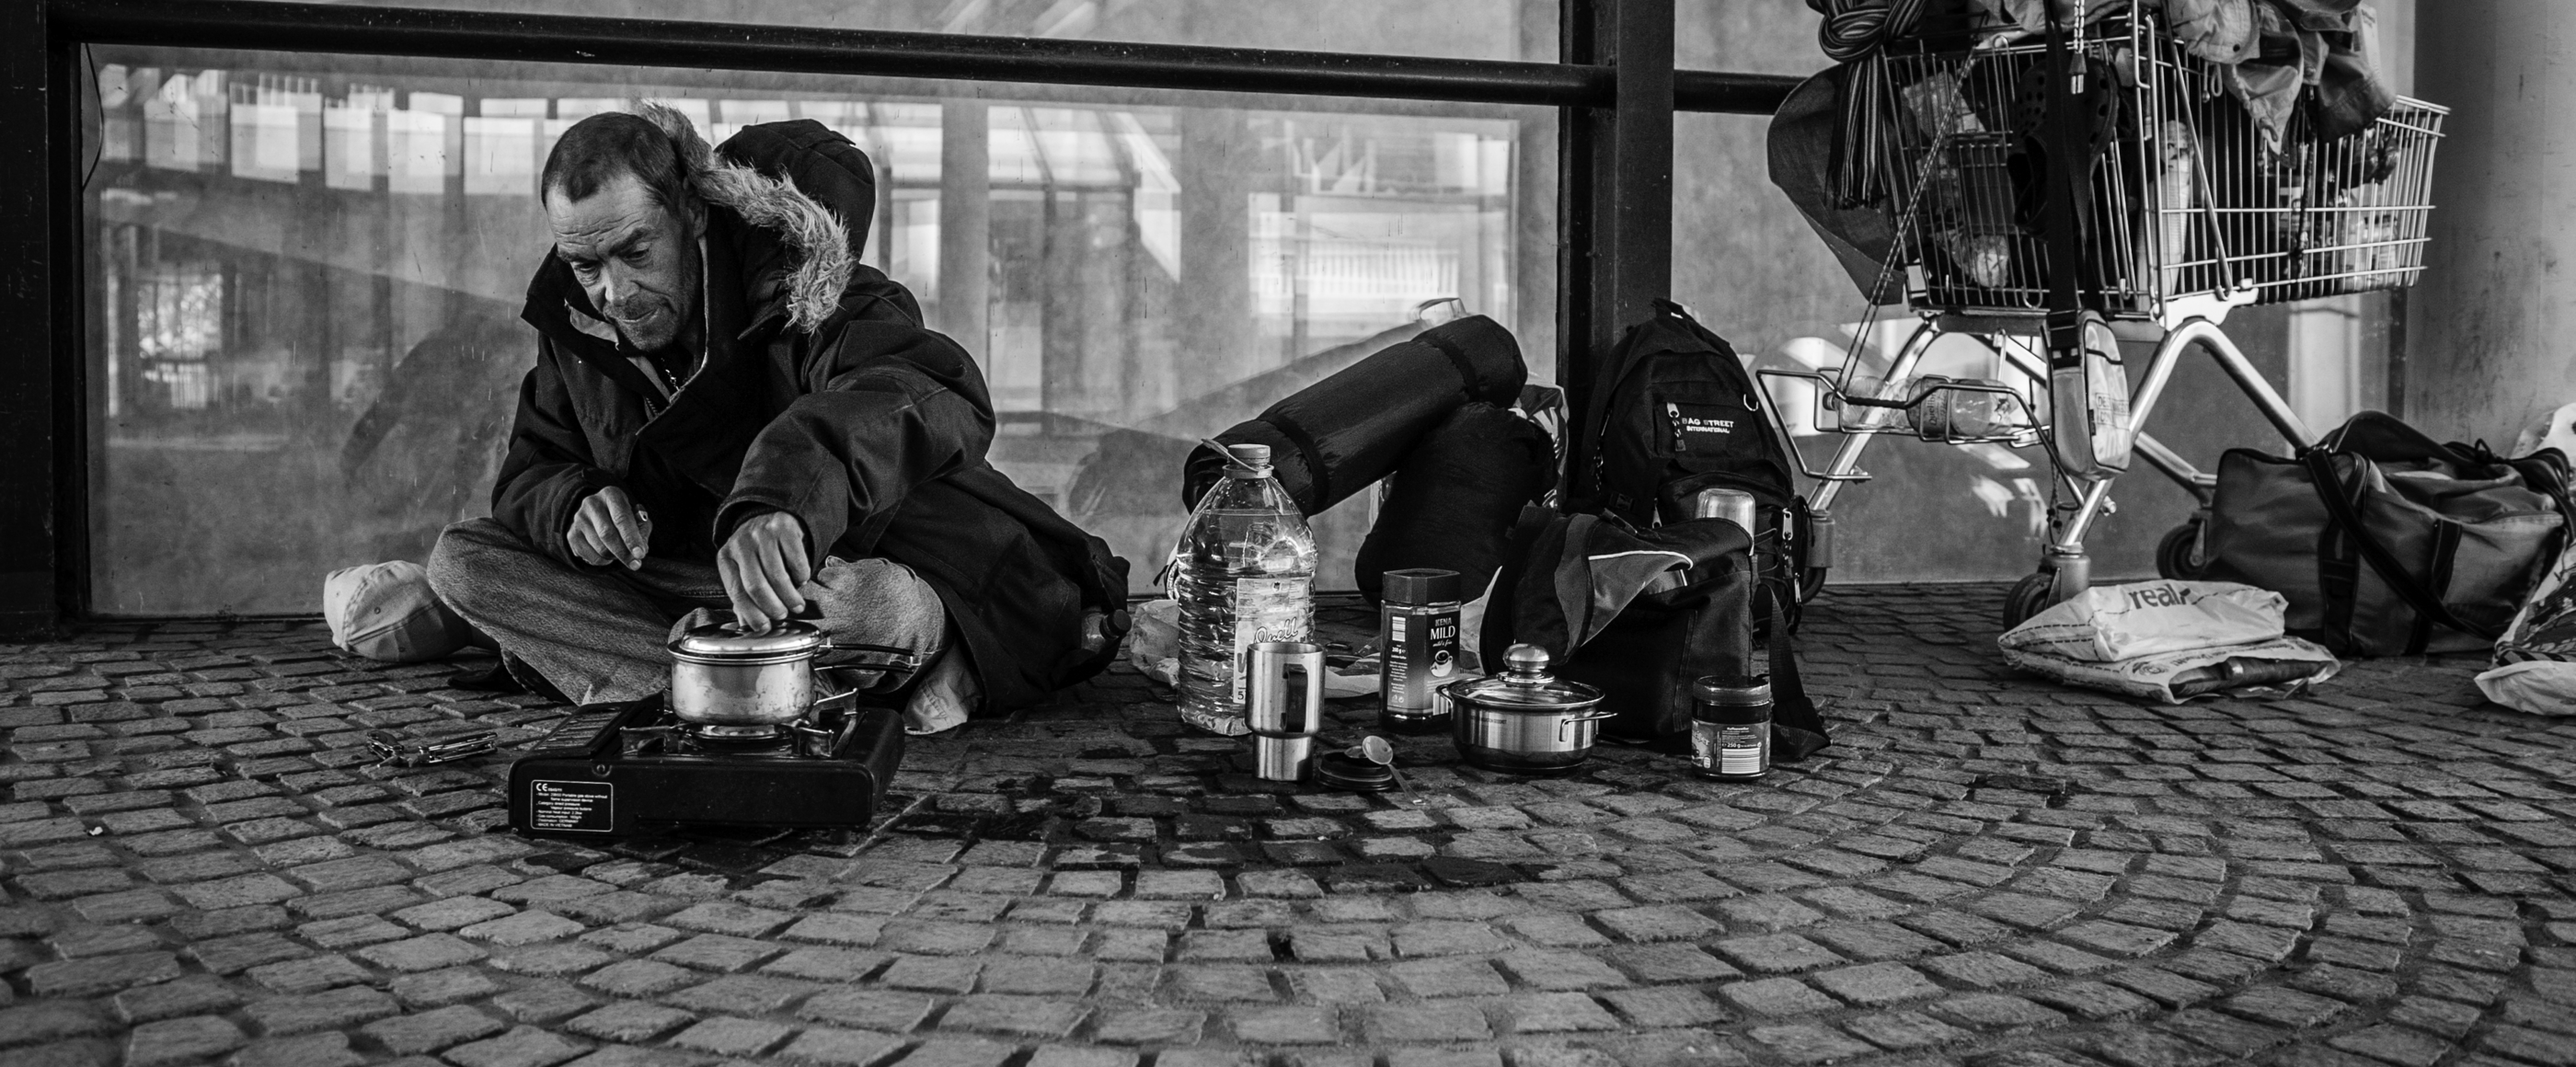 Ein schwarz-weiß-Bild zeigt einen wohl obdachlosen Mann, der mit einige Habseligkeiten auf der Straße vor einem Laden sitzt.